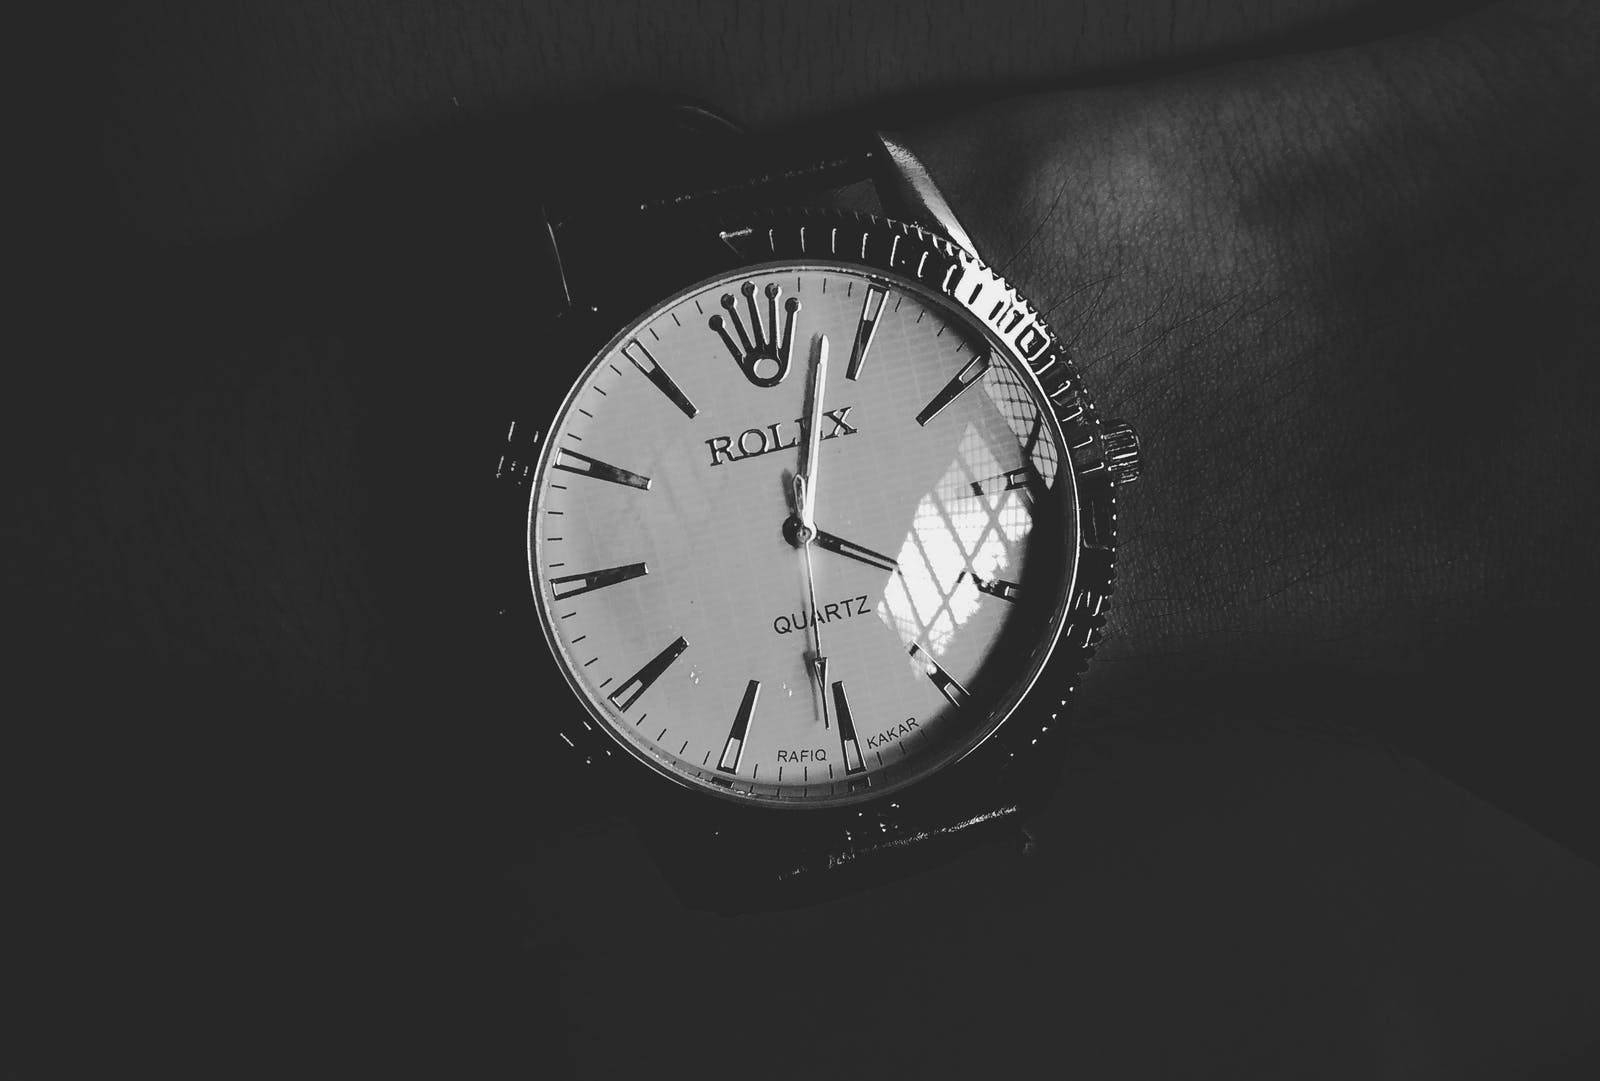 Exquisite Luxury Timepiece - Rolex Hd Wallpaper